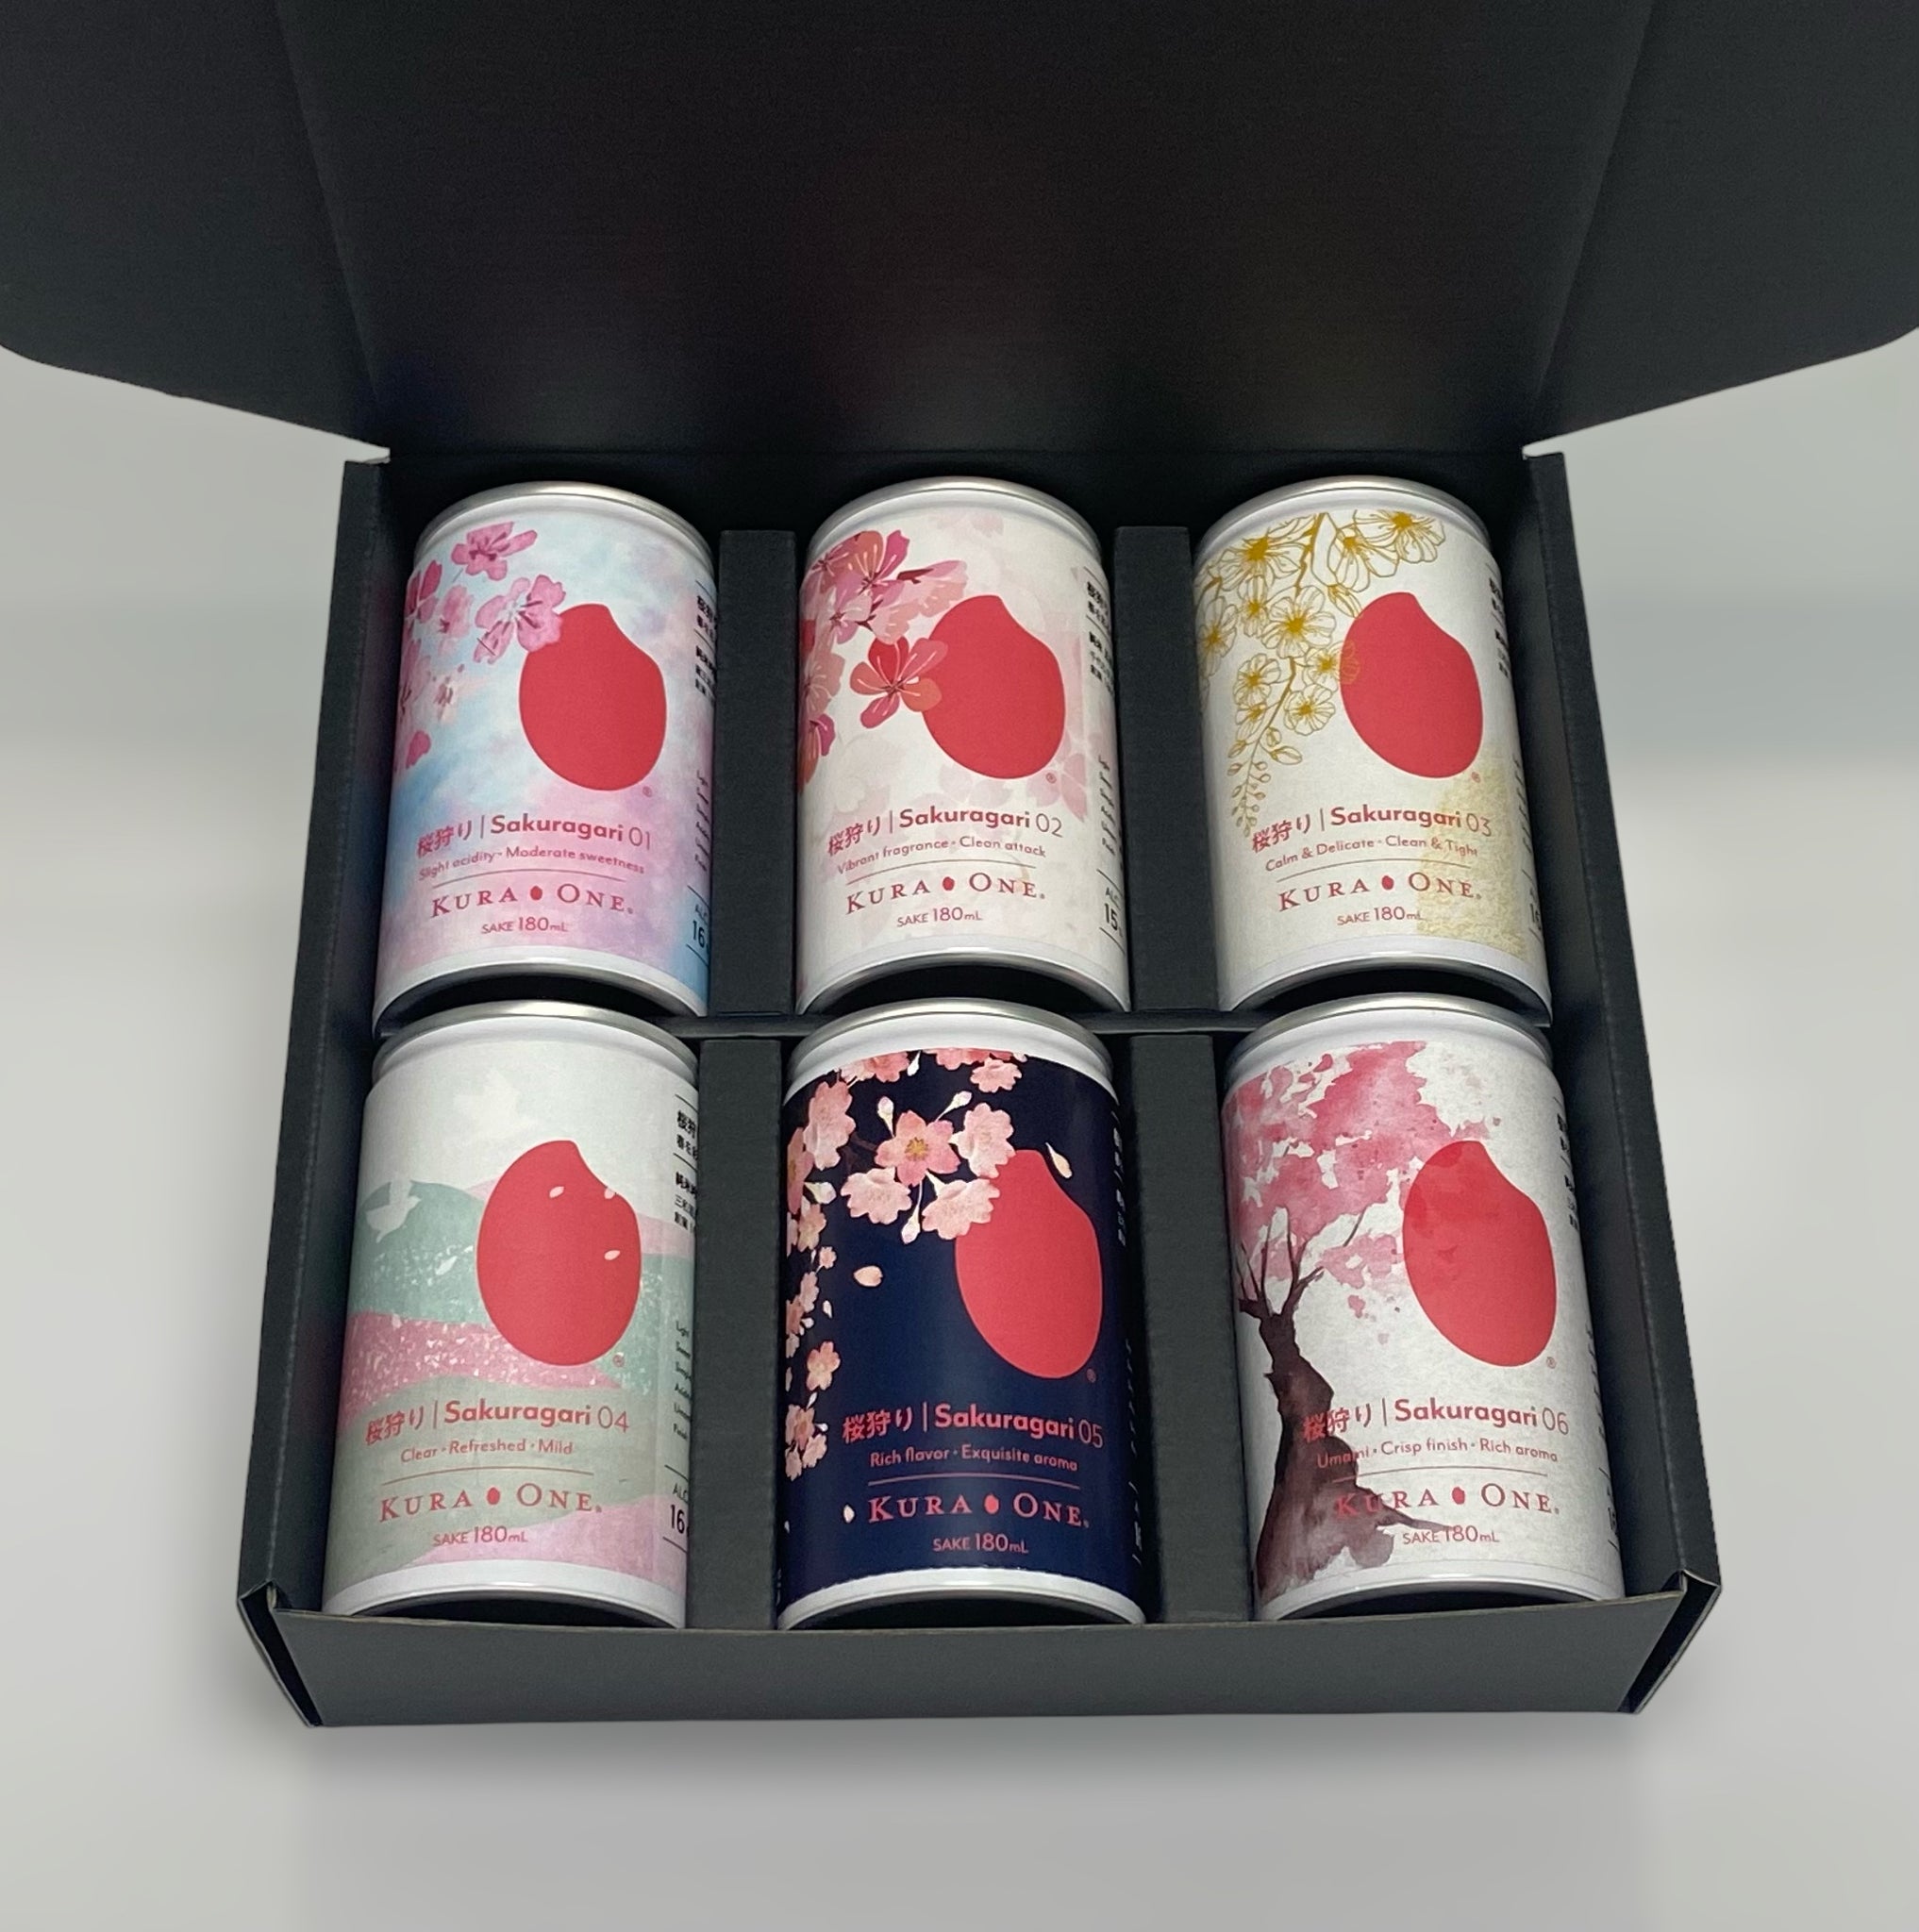 KURA ONE® 桜狩りボックス (受賞酒蔵日本酒180mL6缶)